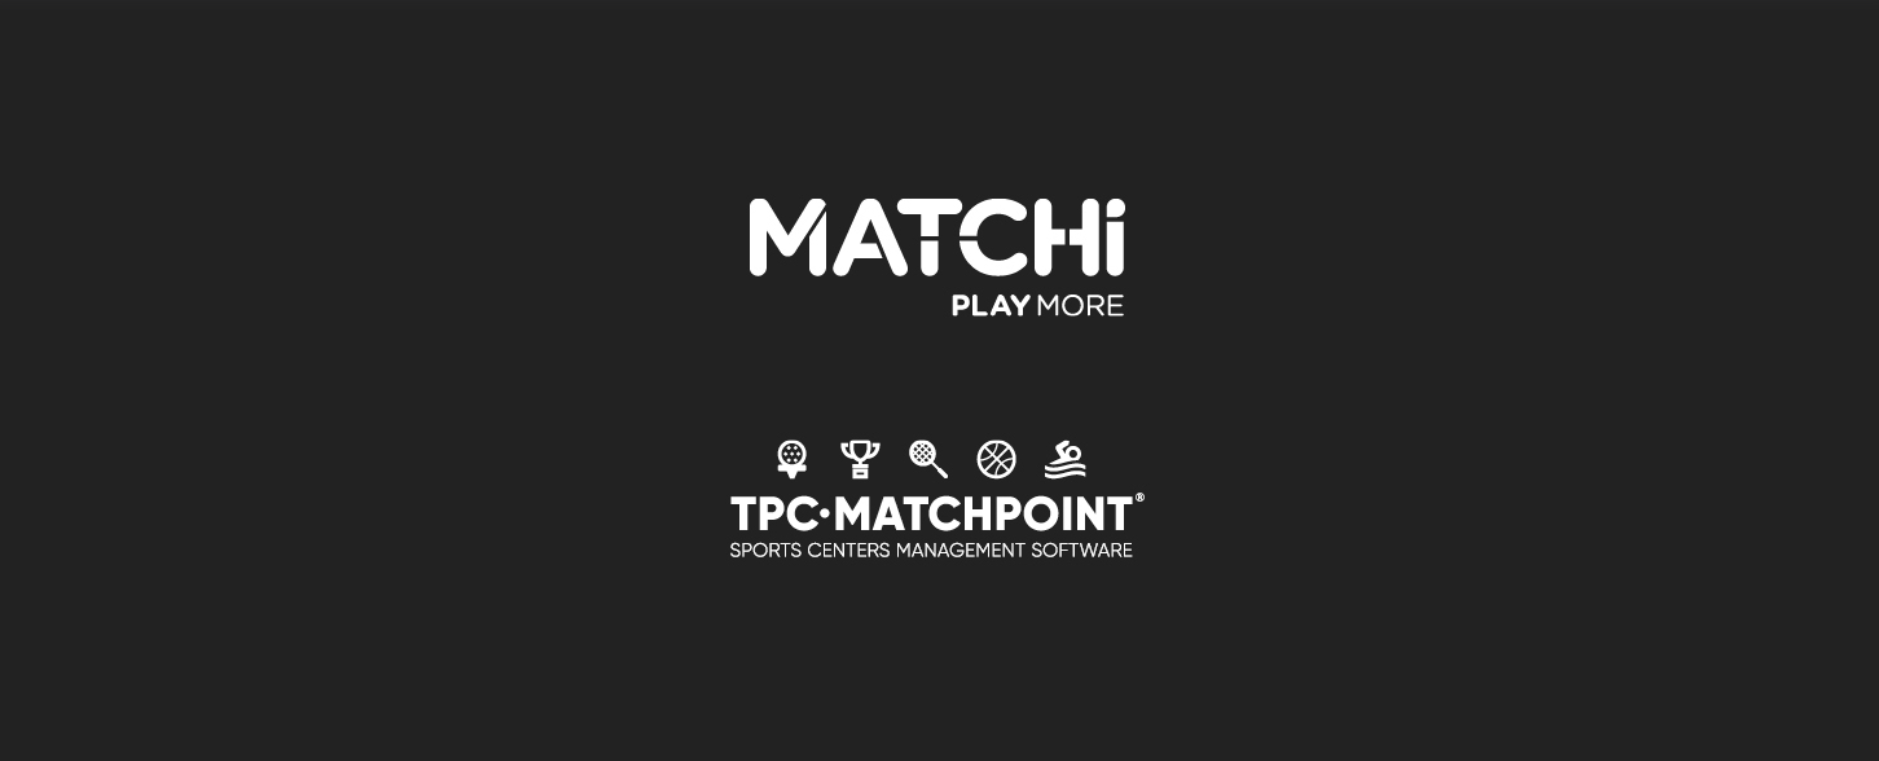 TPC Matchpoint werkt samen met MATCHi, waardoor een van de grootste racketsportnetwerken ter wereld ontstaat!